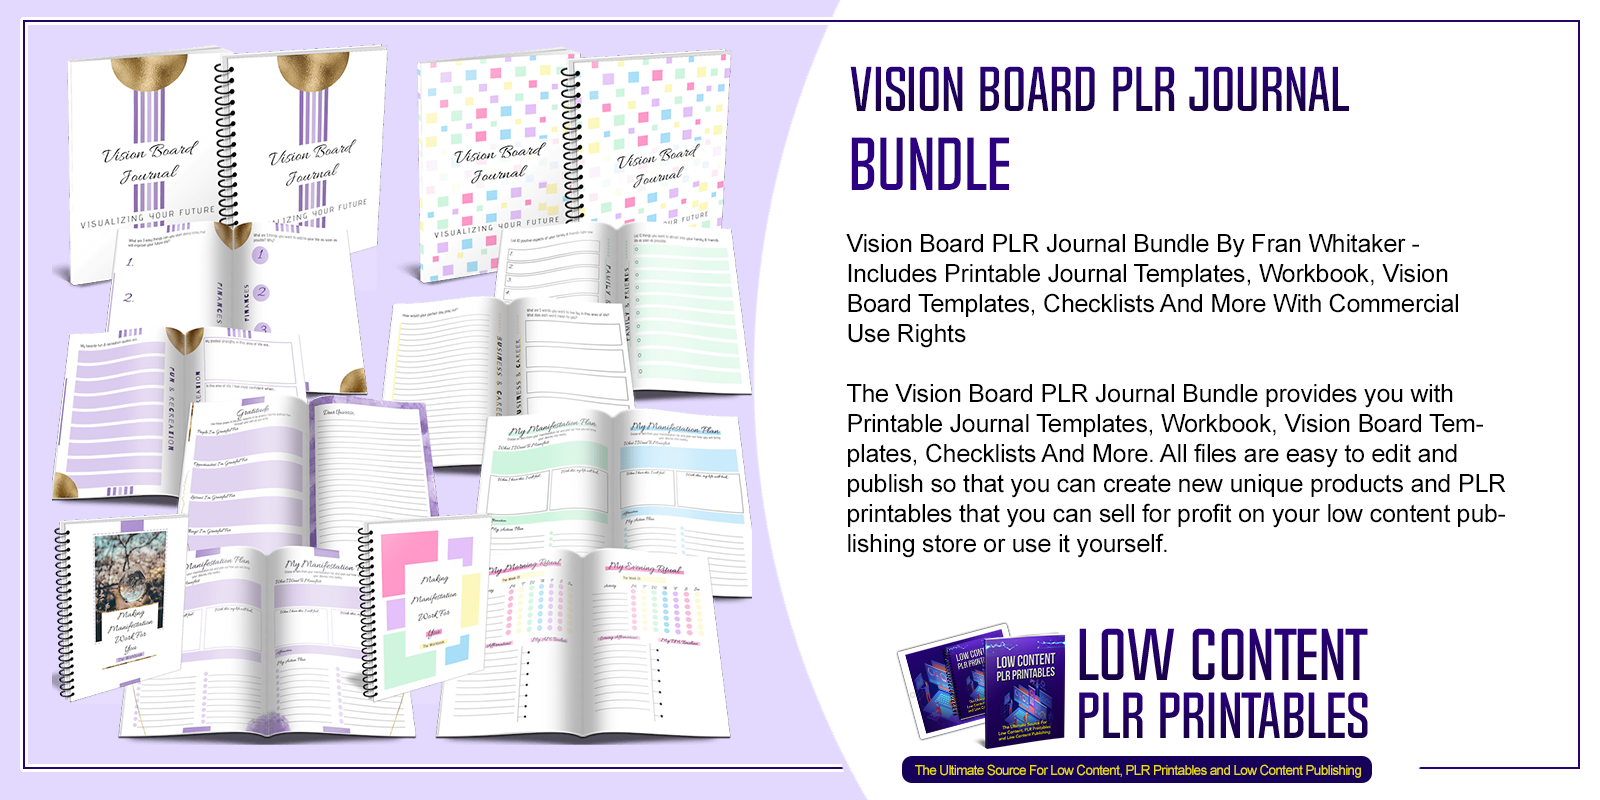 Vision Board PLR Journal Bundle